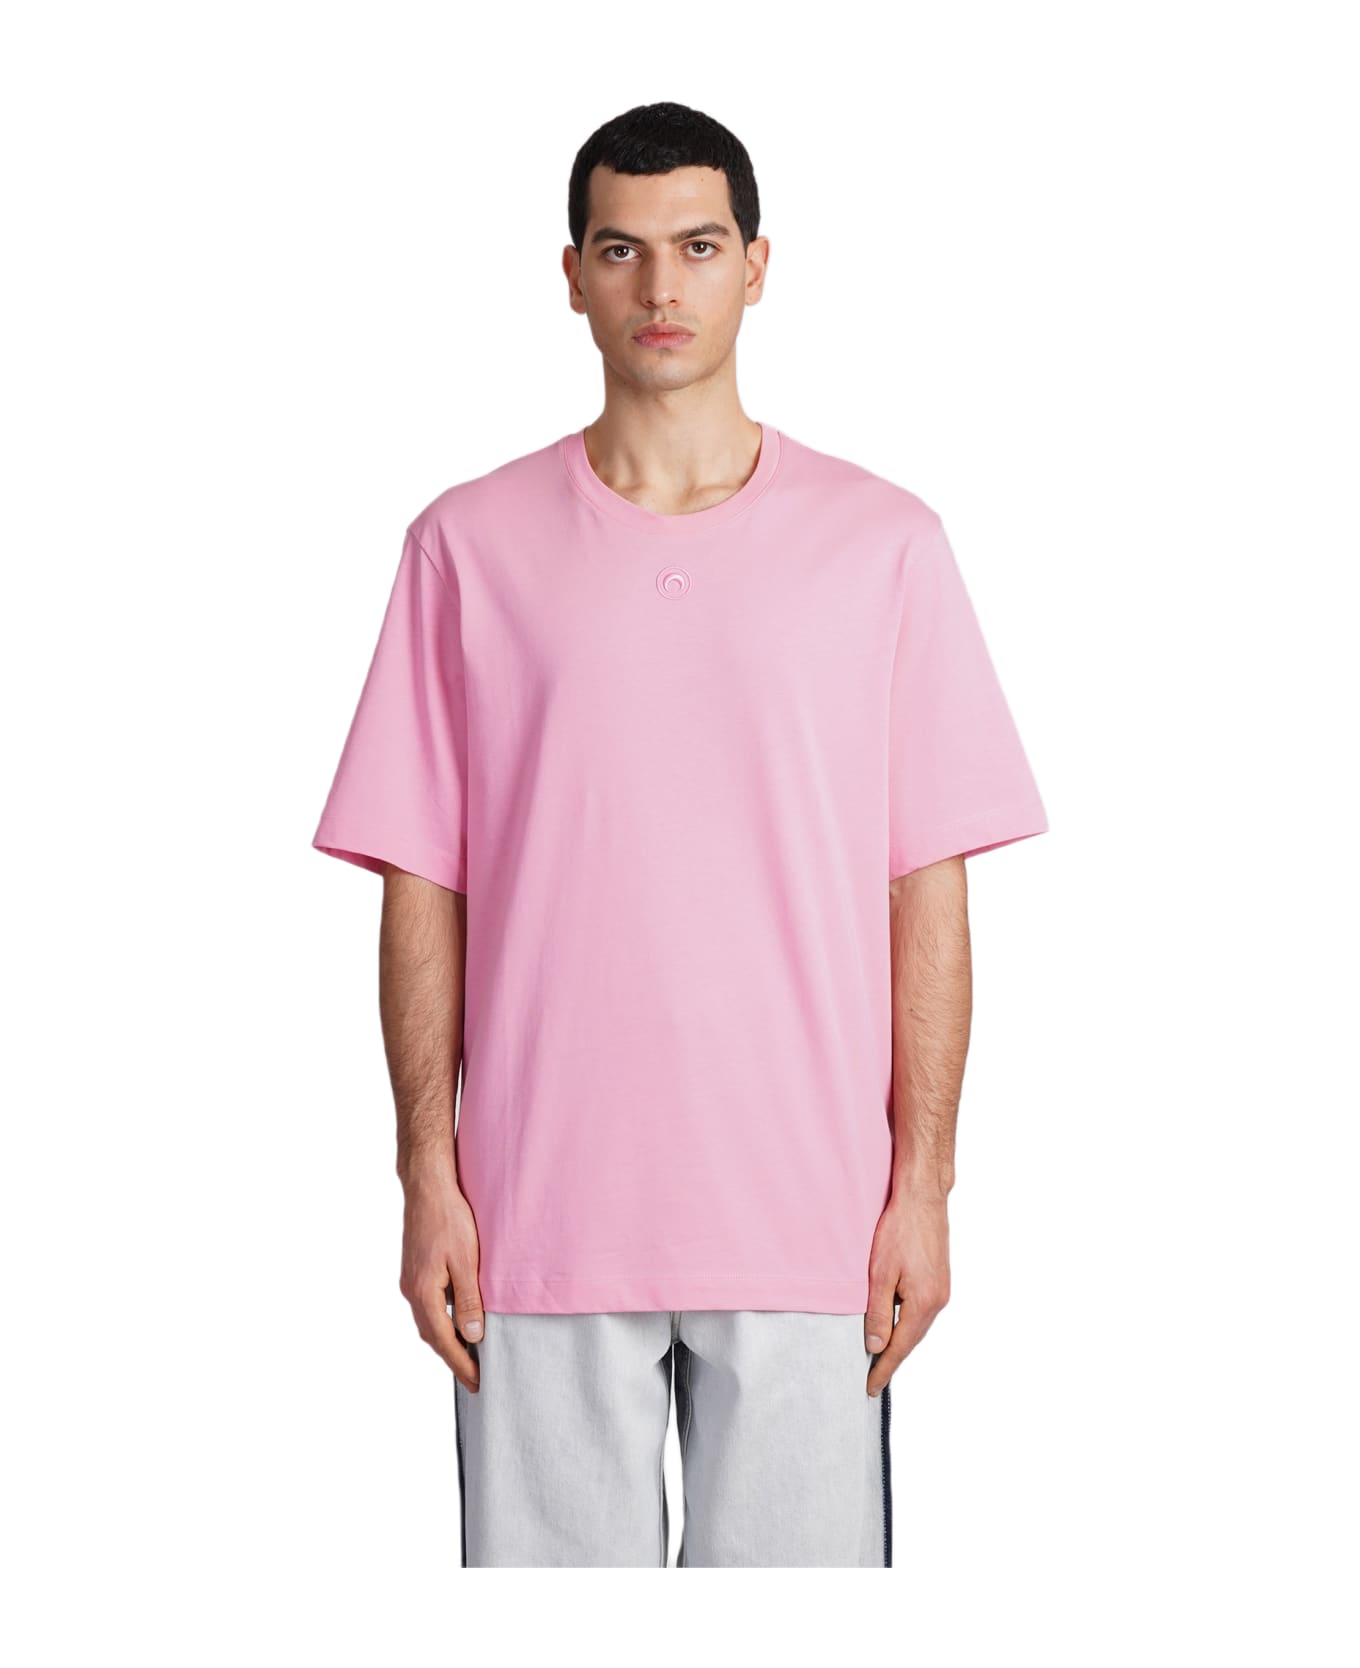 Marine Serre T-shirt In Rose-pink Cotton - rose-pink